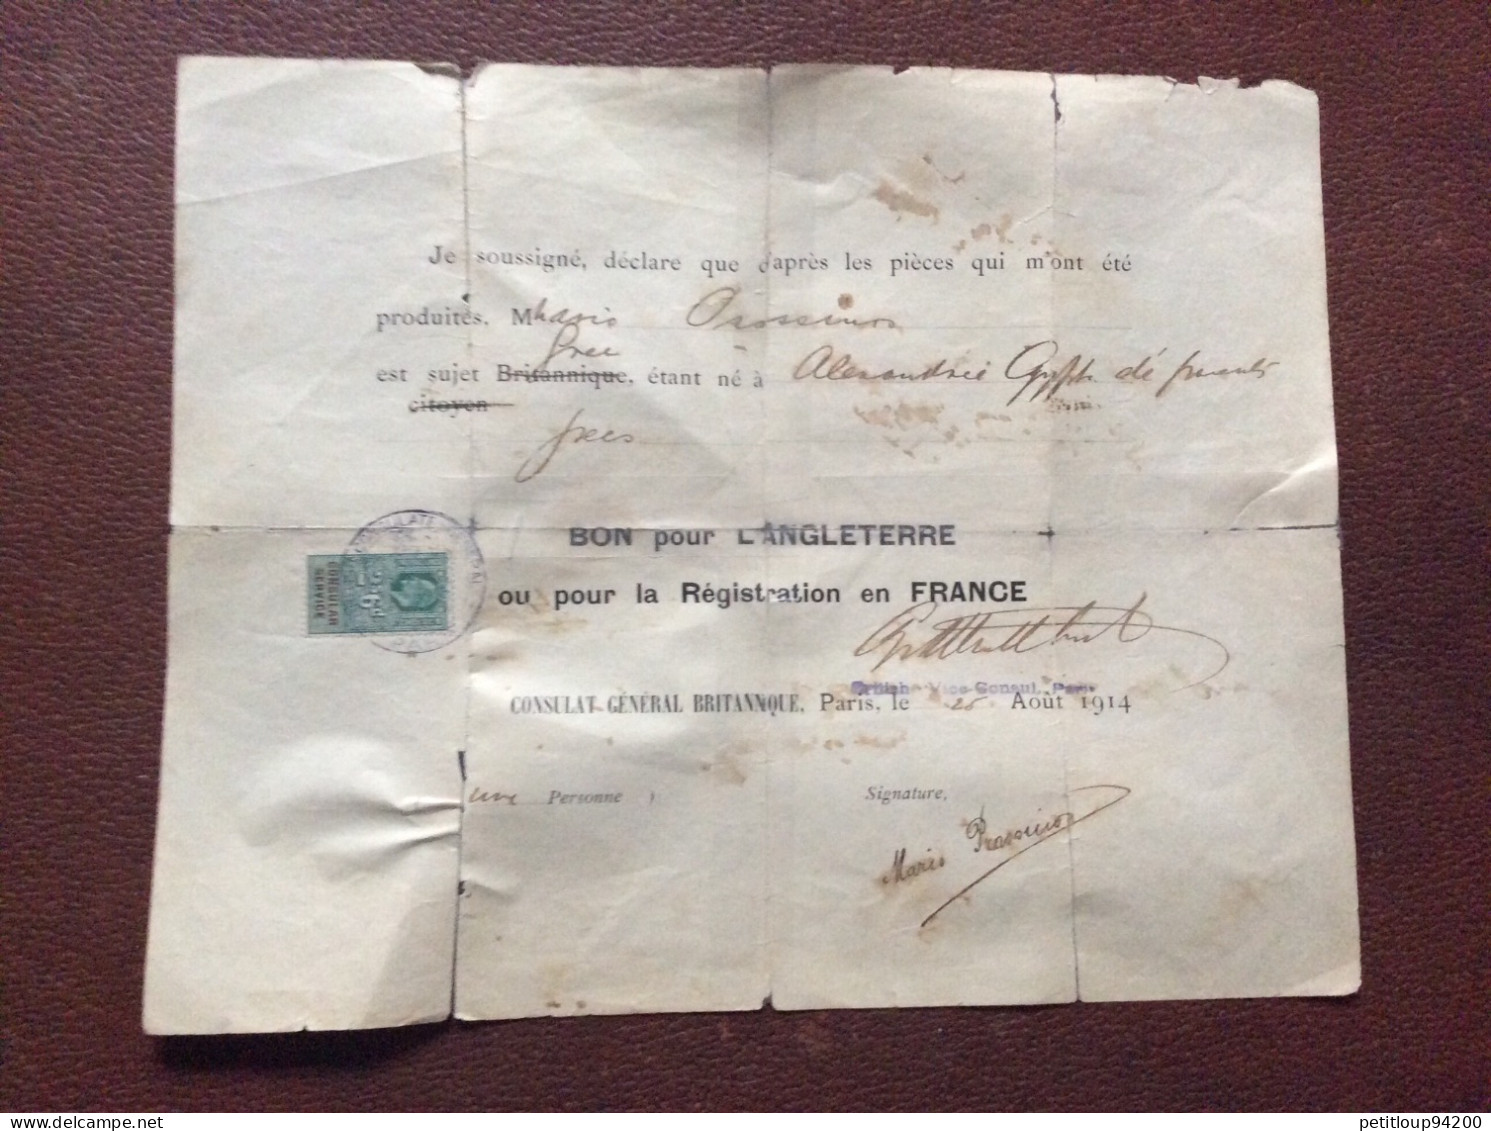 TIMBRE FISCAL SUR DOCUMENT Bon Pour L’ANGLETERRE  Registration En FRANCE  *2s 6d  CONSULAT GENERAL BRITANIQUE  1914 - Steuermarken